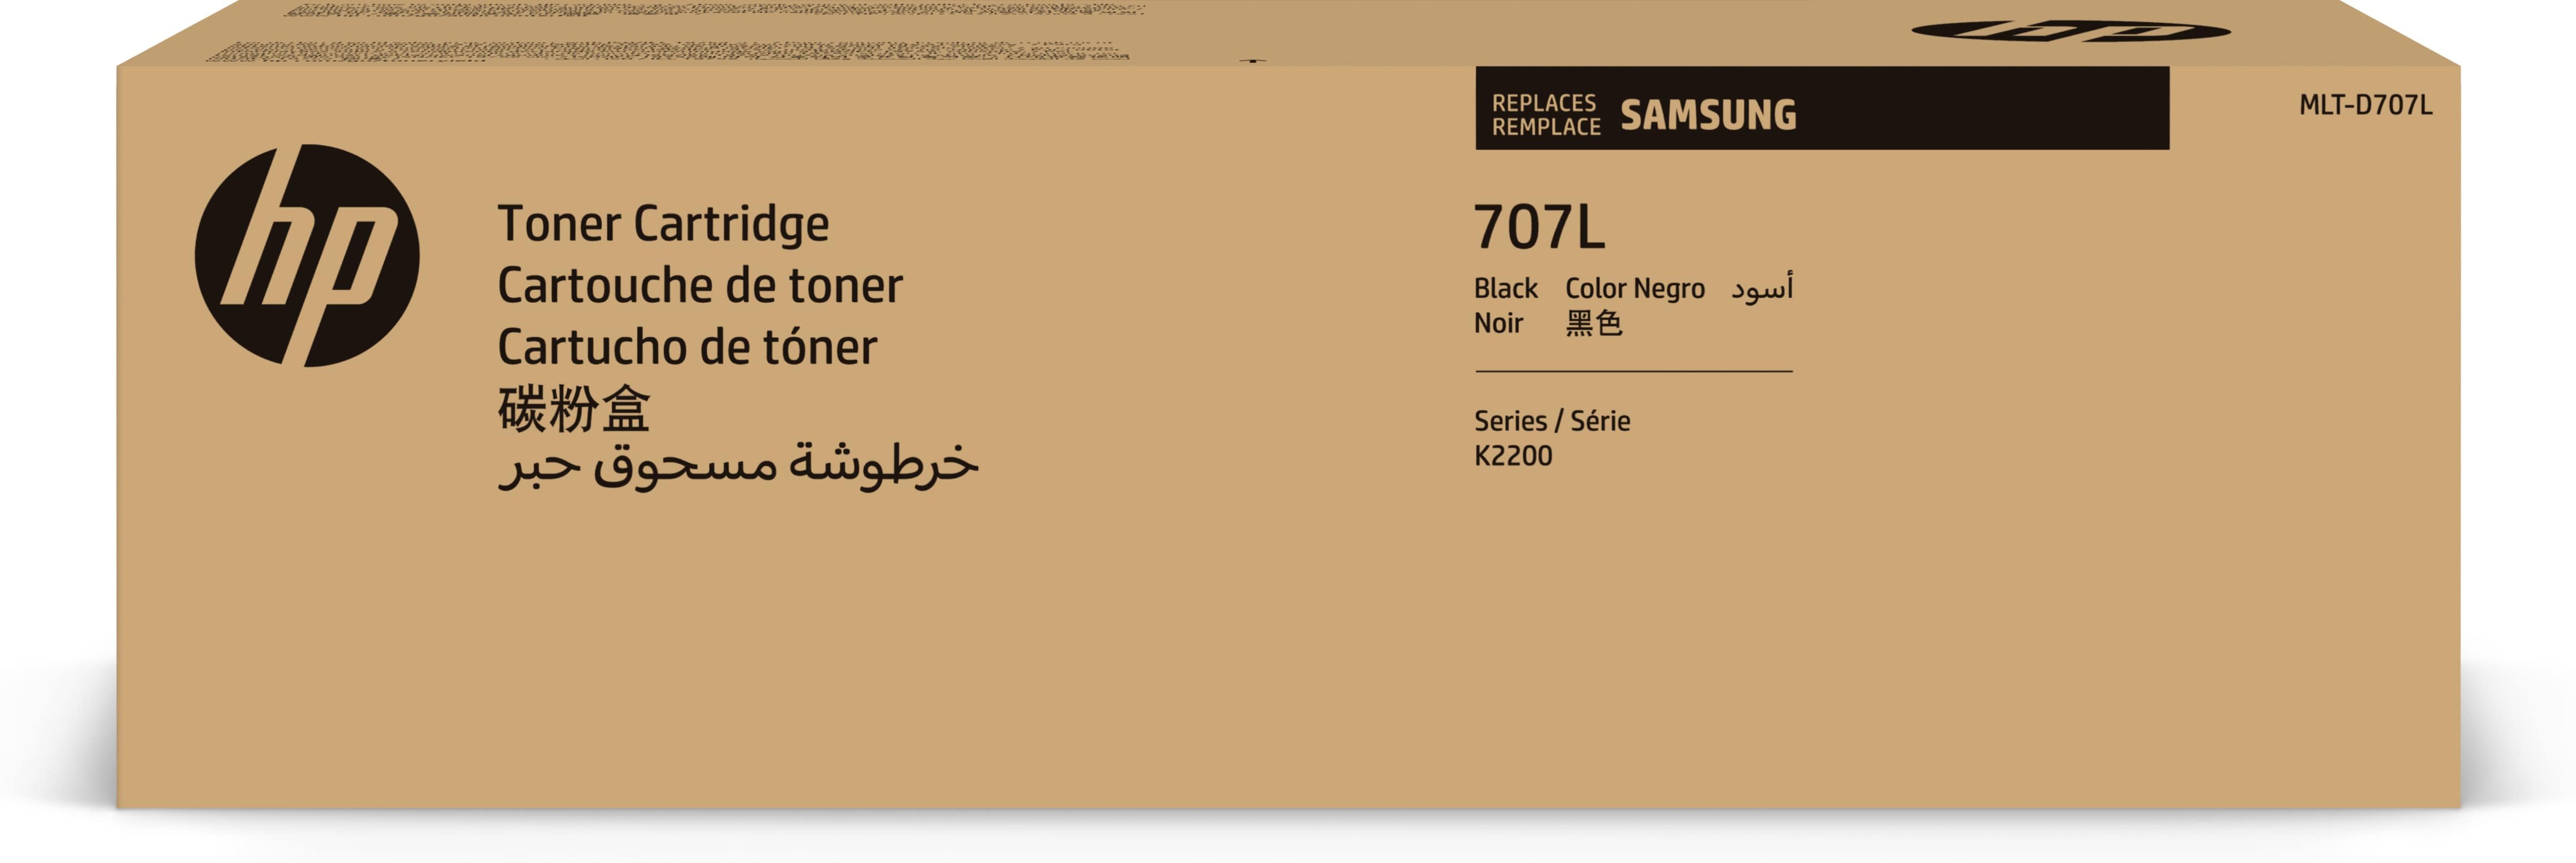 Samsung Toner MLT-D707L / SS775A Black